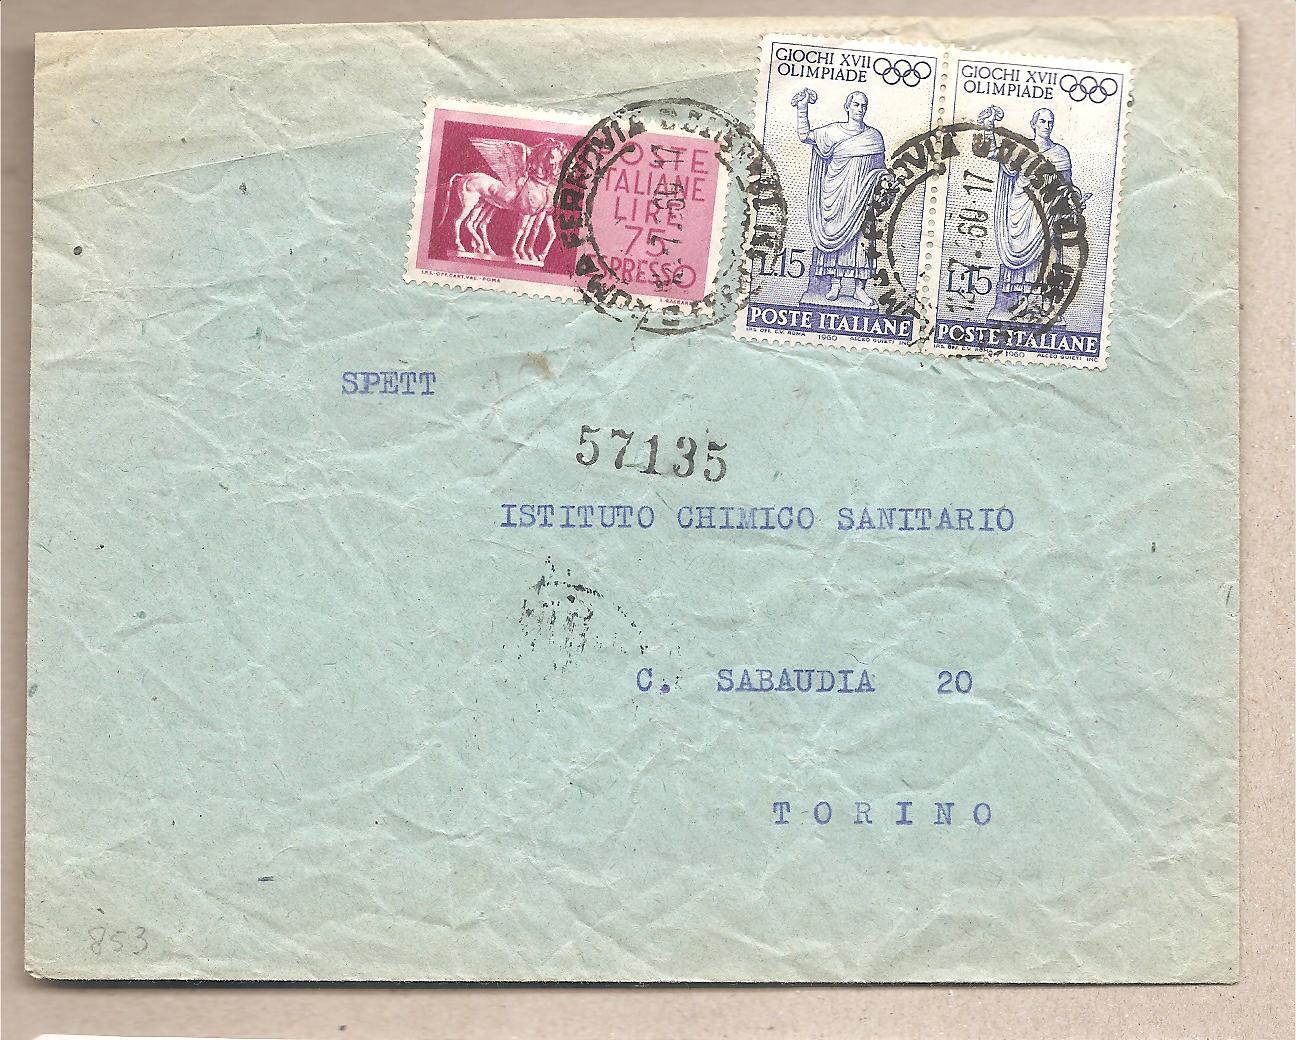 49705 - Italia - busta viaggiata come Espresso da Roma a Torino - 1960